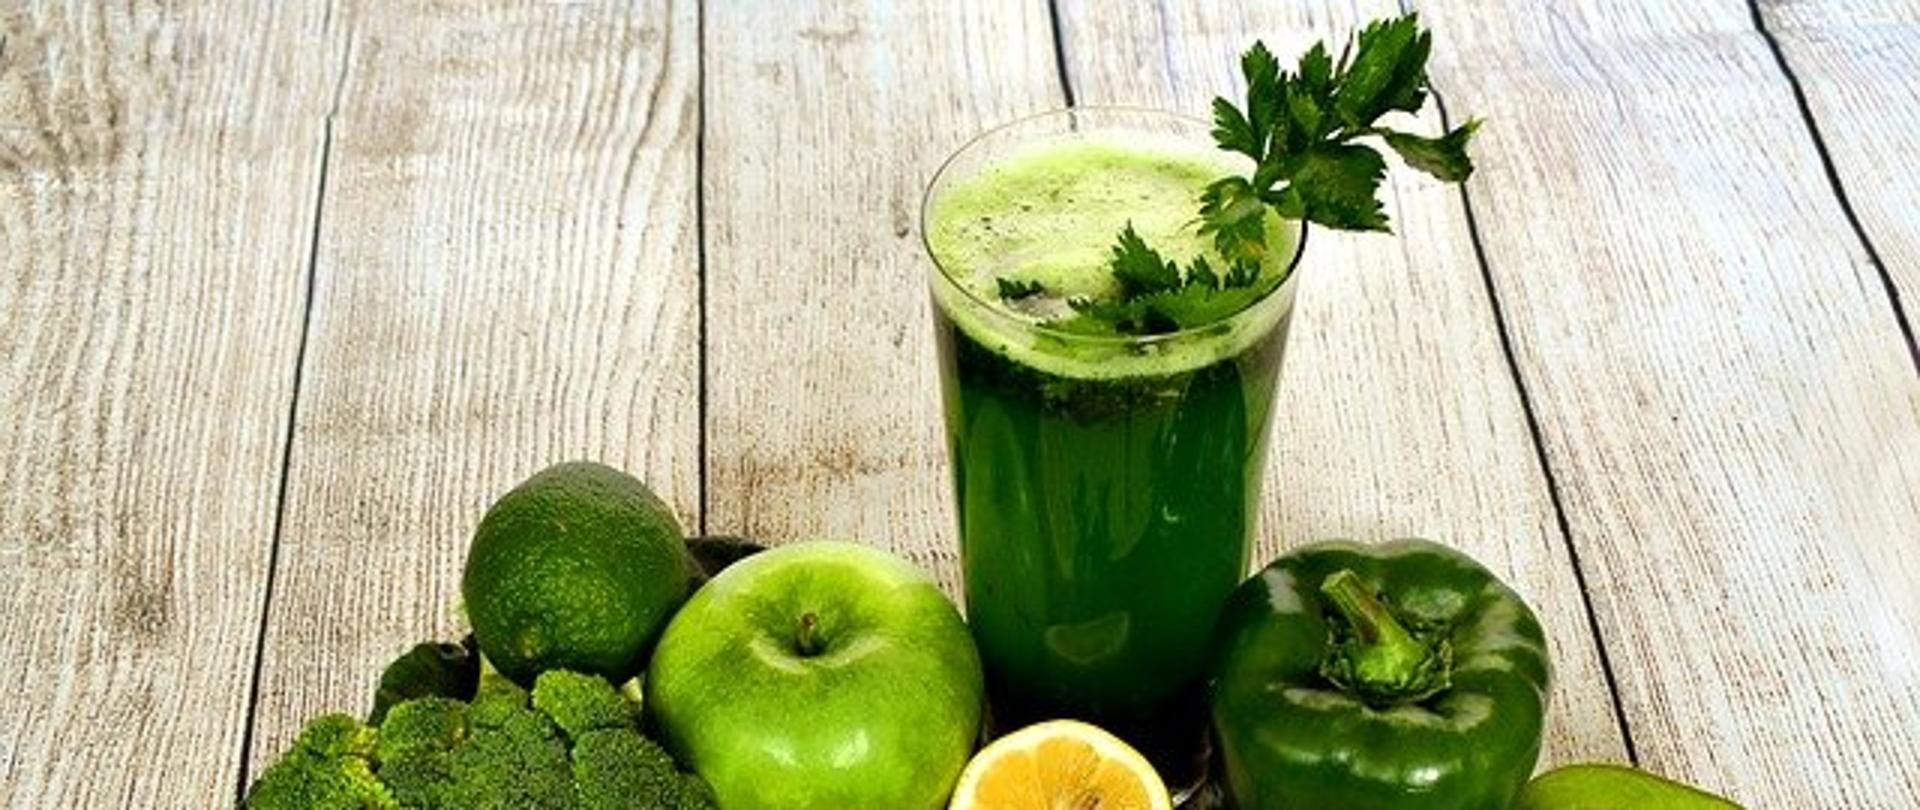 Na zdjęciu widoczna jest szklanka z zielonym sokiem oraz zielone warzywa i owoce w tym: jabłko, awokado, papryka, brokuł, kiwi, limonka i cytryna.